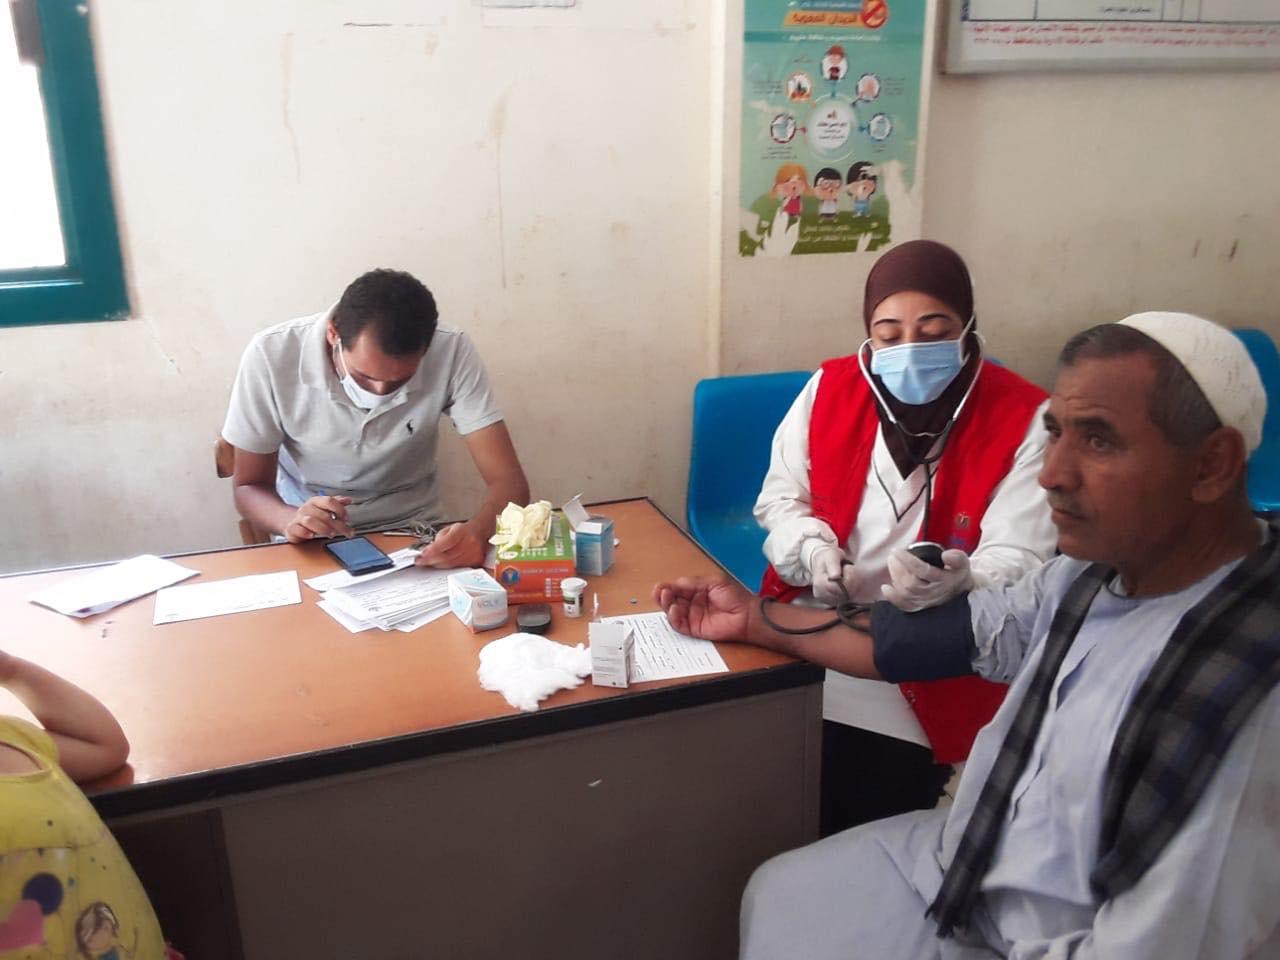   277 فريقا طبيا بصحة المنيا يشاركون بمبادرة فحص وعلاج الأمراض المزمنة